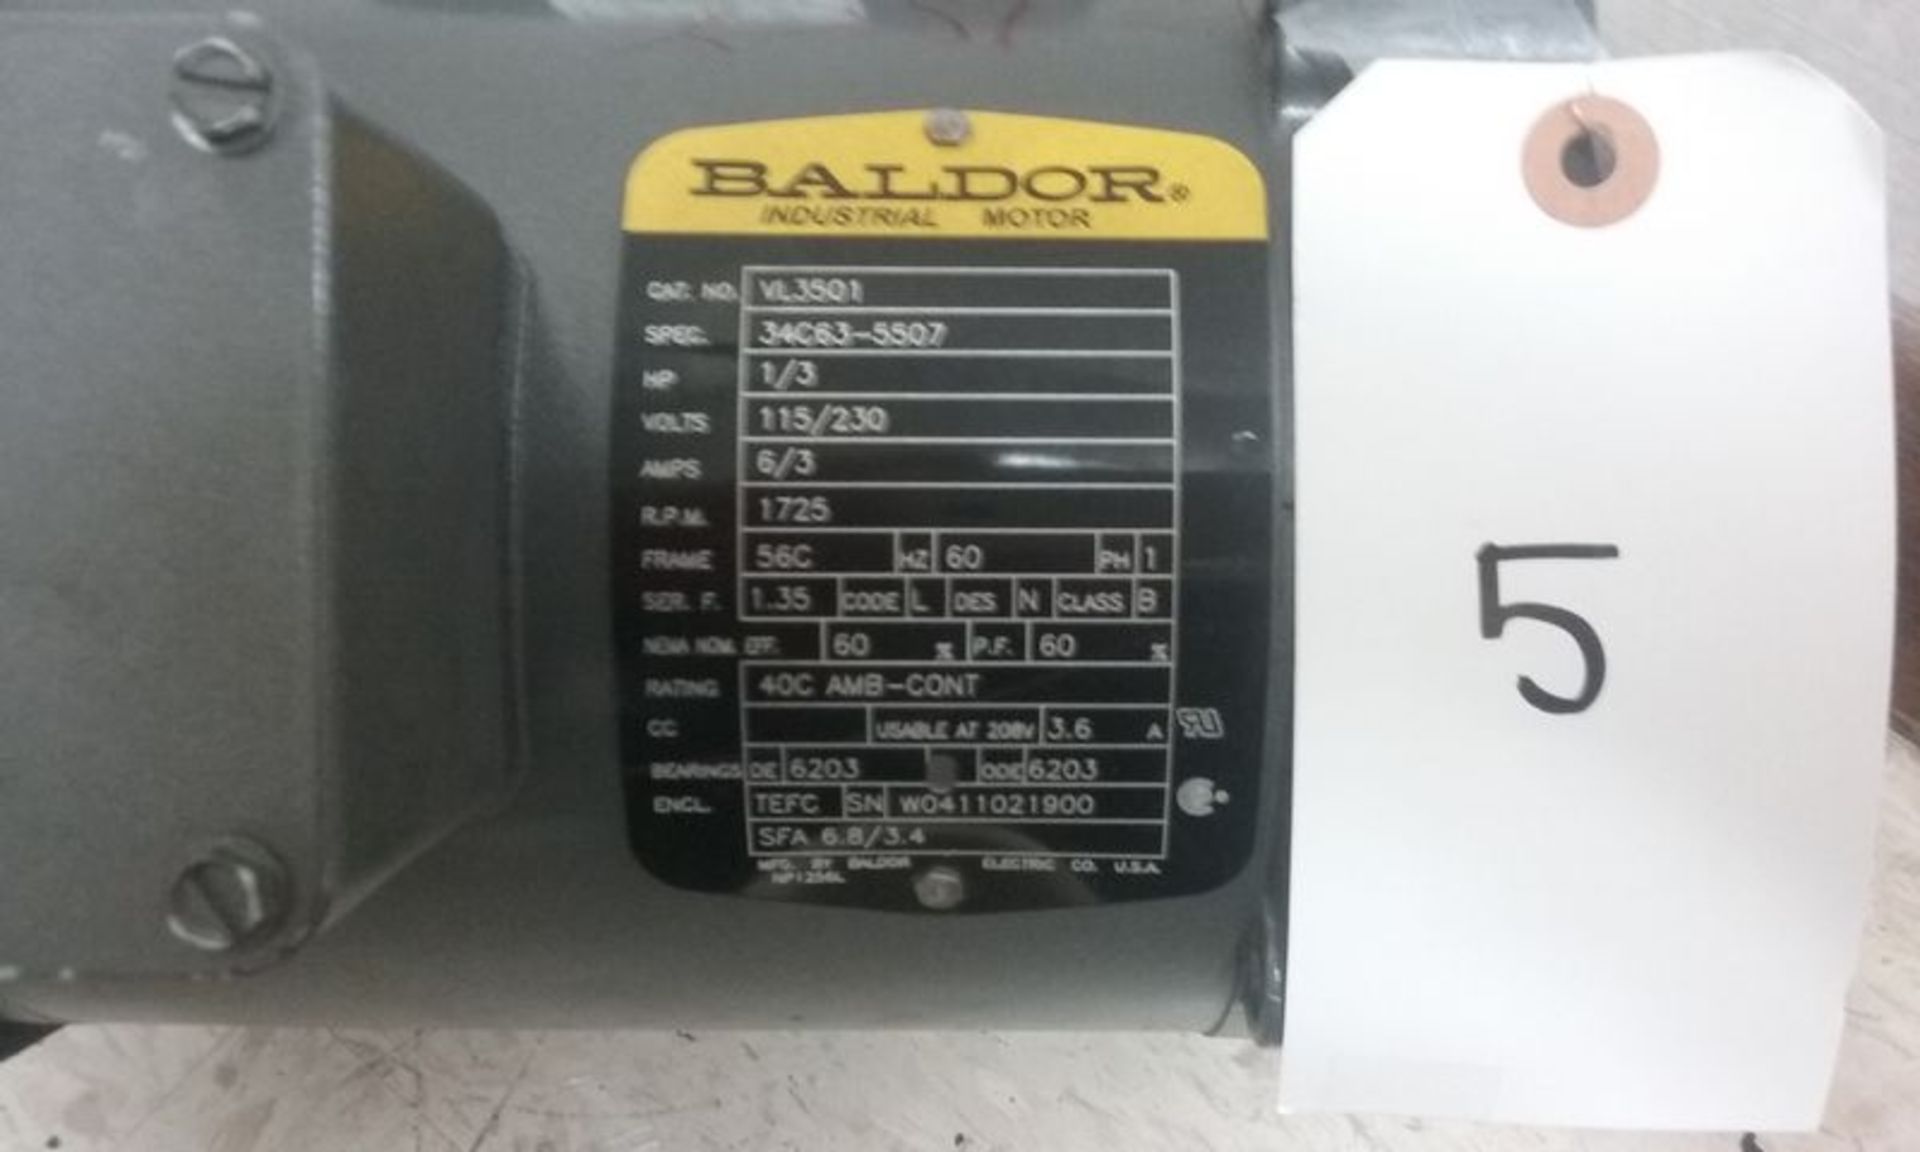 BALDOR MOTOR 1/3 HP, 1725 RPM (NEW) - Image 2 of 5